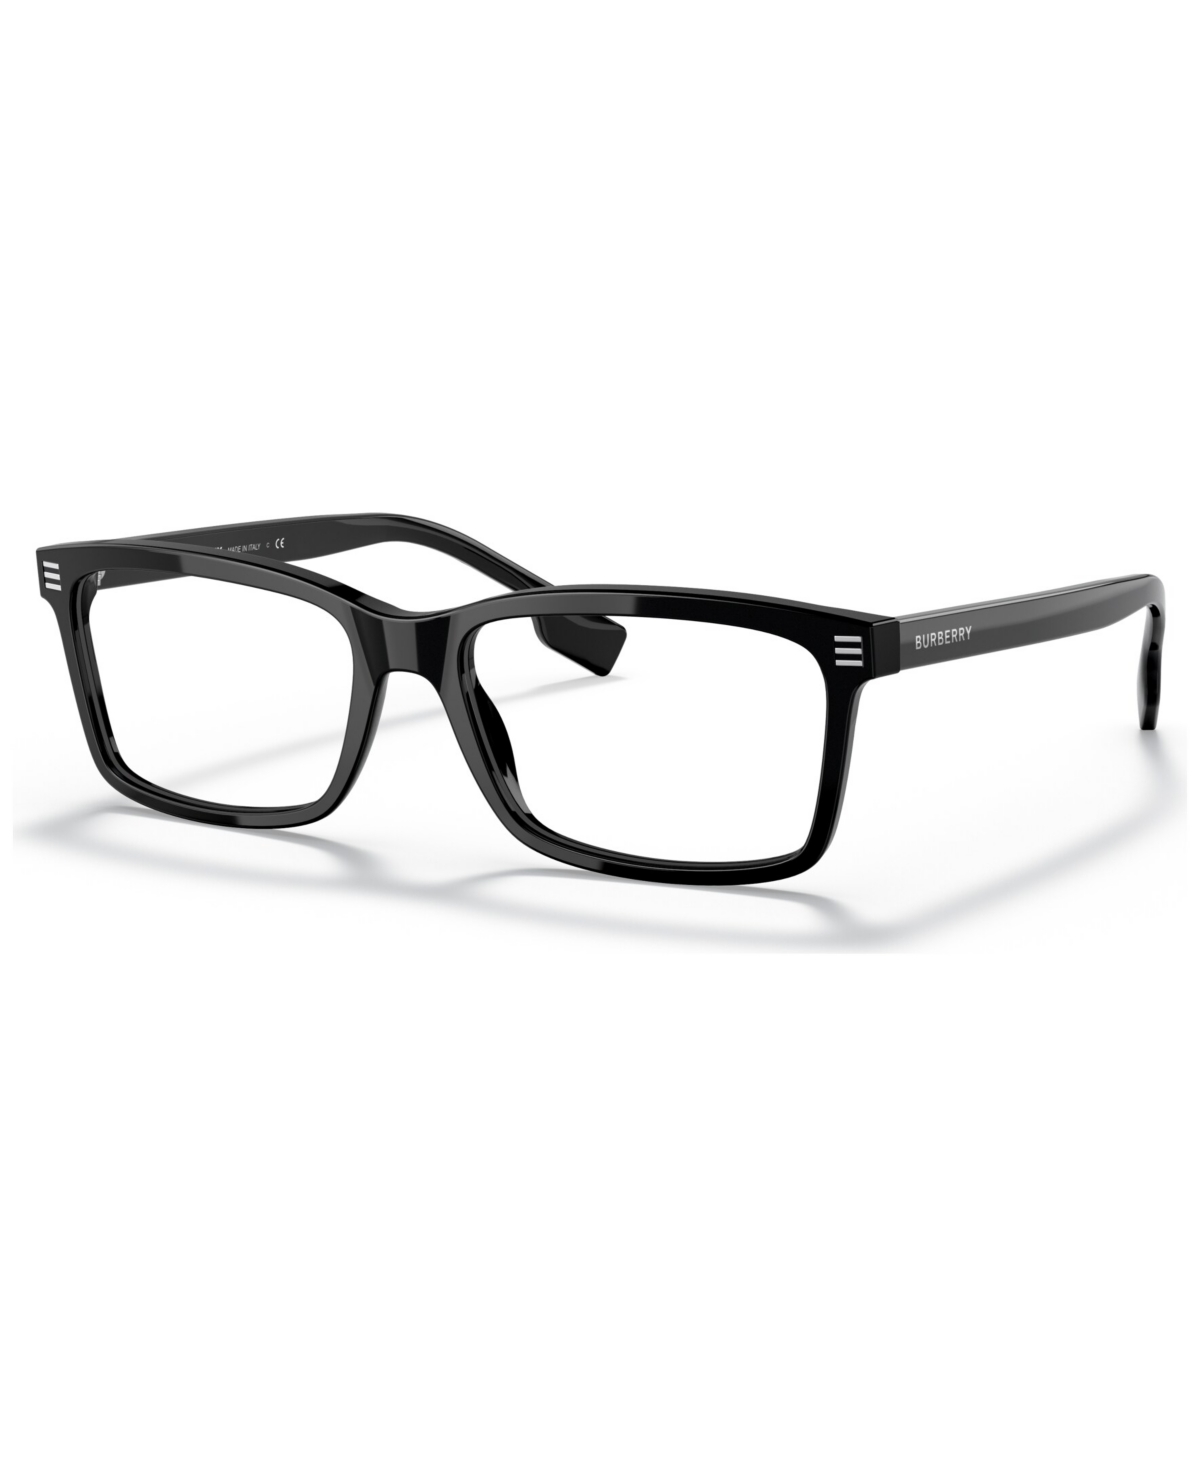 Men's Foster Eyeglasses, BE2352 56 - Black